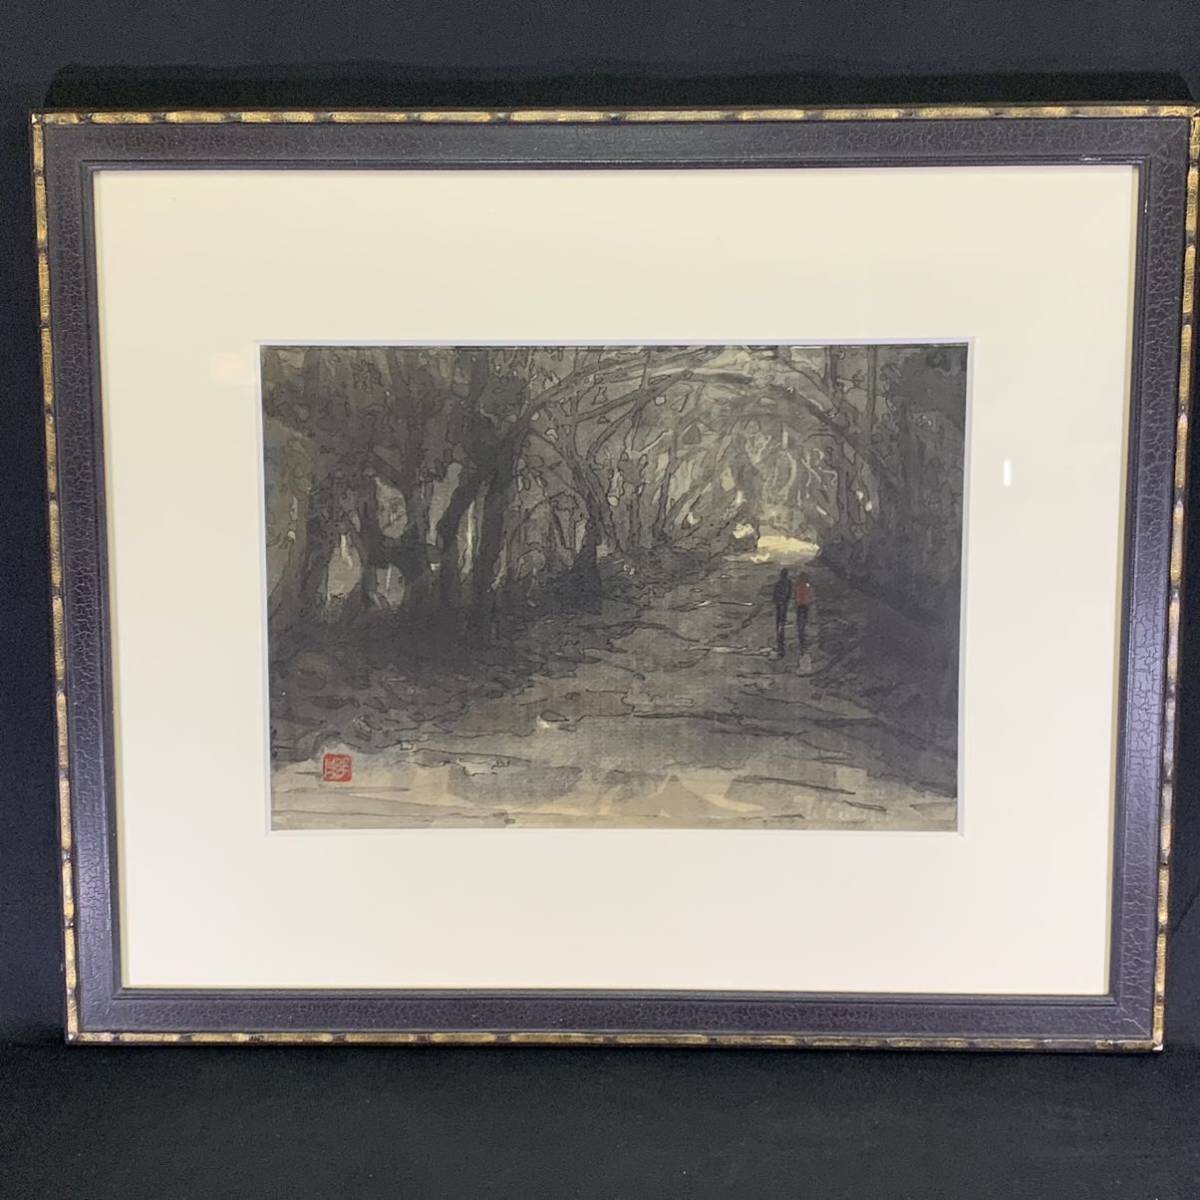 सिकाडा 56) किटो मासारू यामातोजी व्हिस्परिंग एले वॉटर कलर पेंटिंग, फंसाया, आकार लगभग 39 x 46.5 सेमी, चित्रकारी, आबरंग, प्रकृति, परिदृश्य चित्रकला